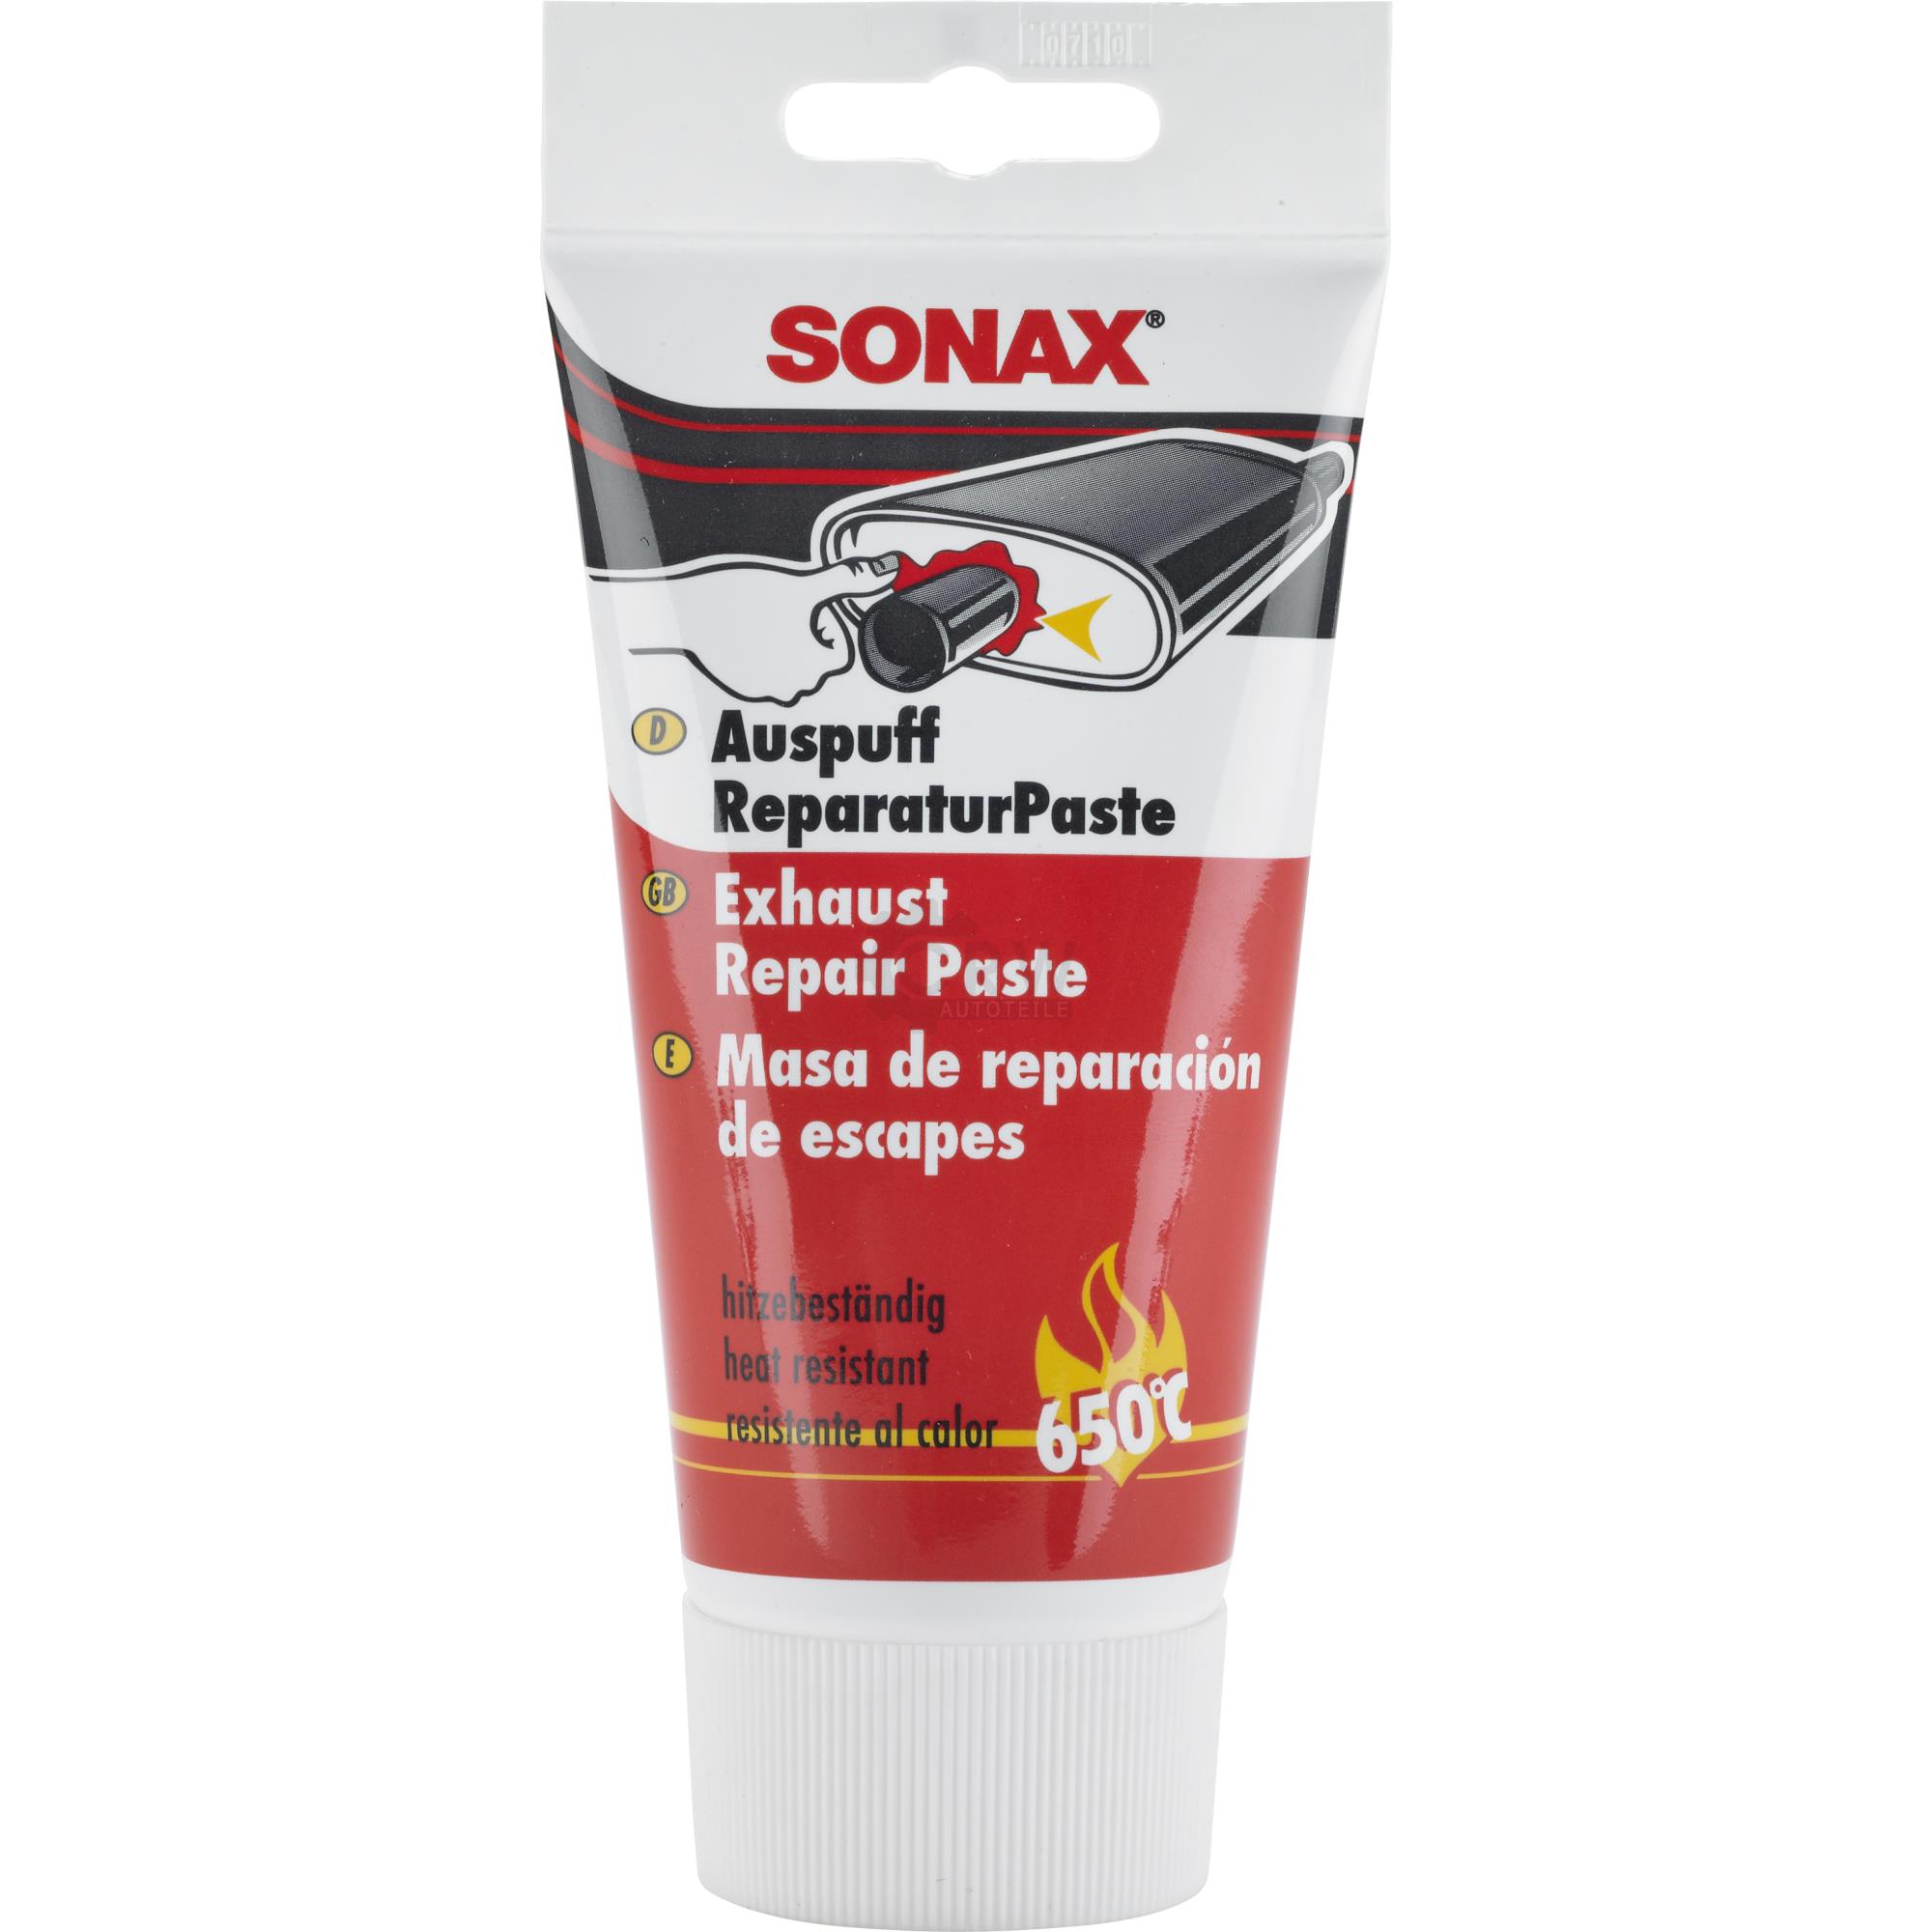 SONAX AuspuffReparaturPaste Auspuff Reparatur Dichtmasse Paste 200 ml